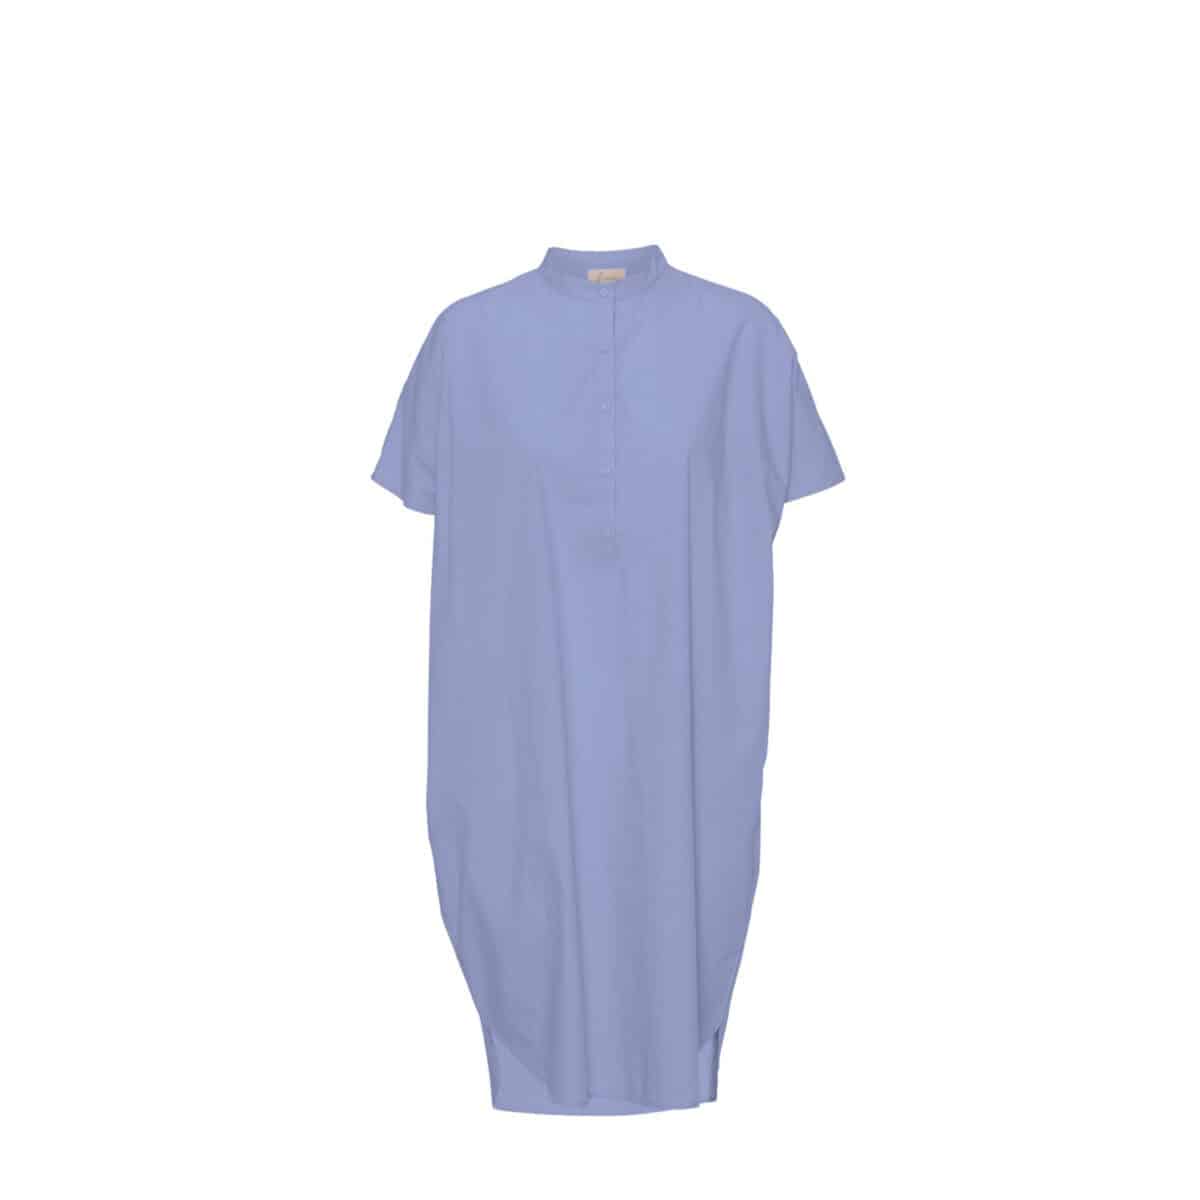 Frau Seoul kjole korte ærmer lyseblå